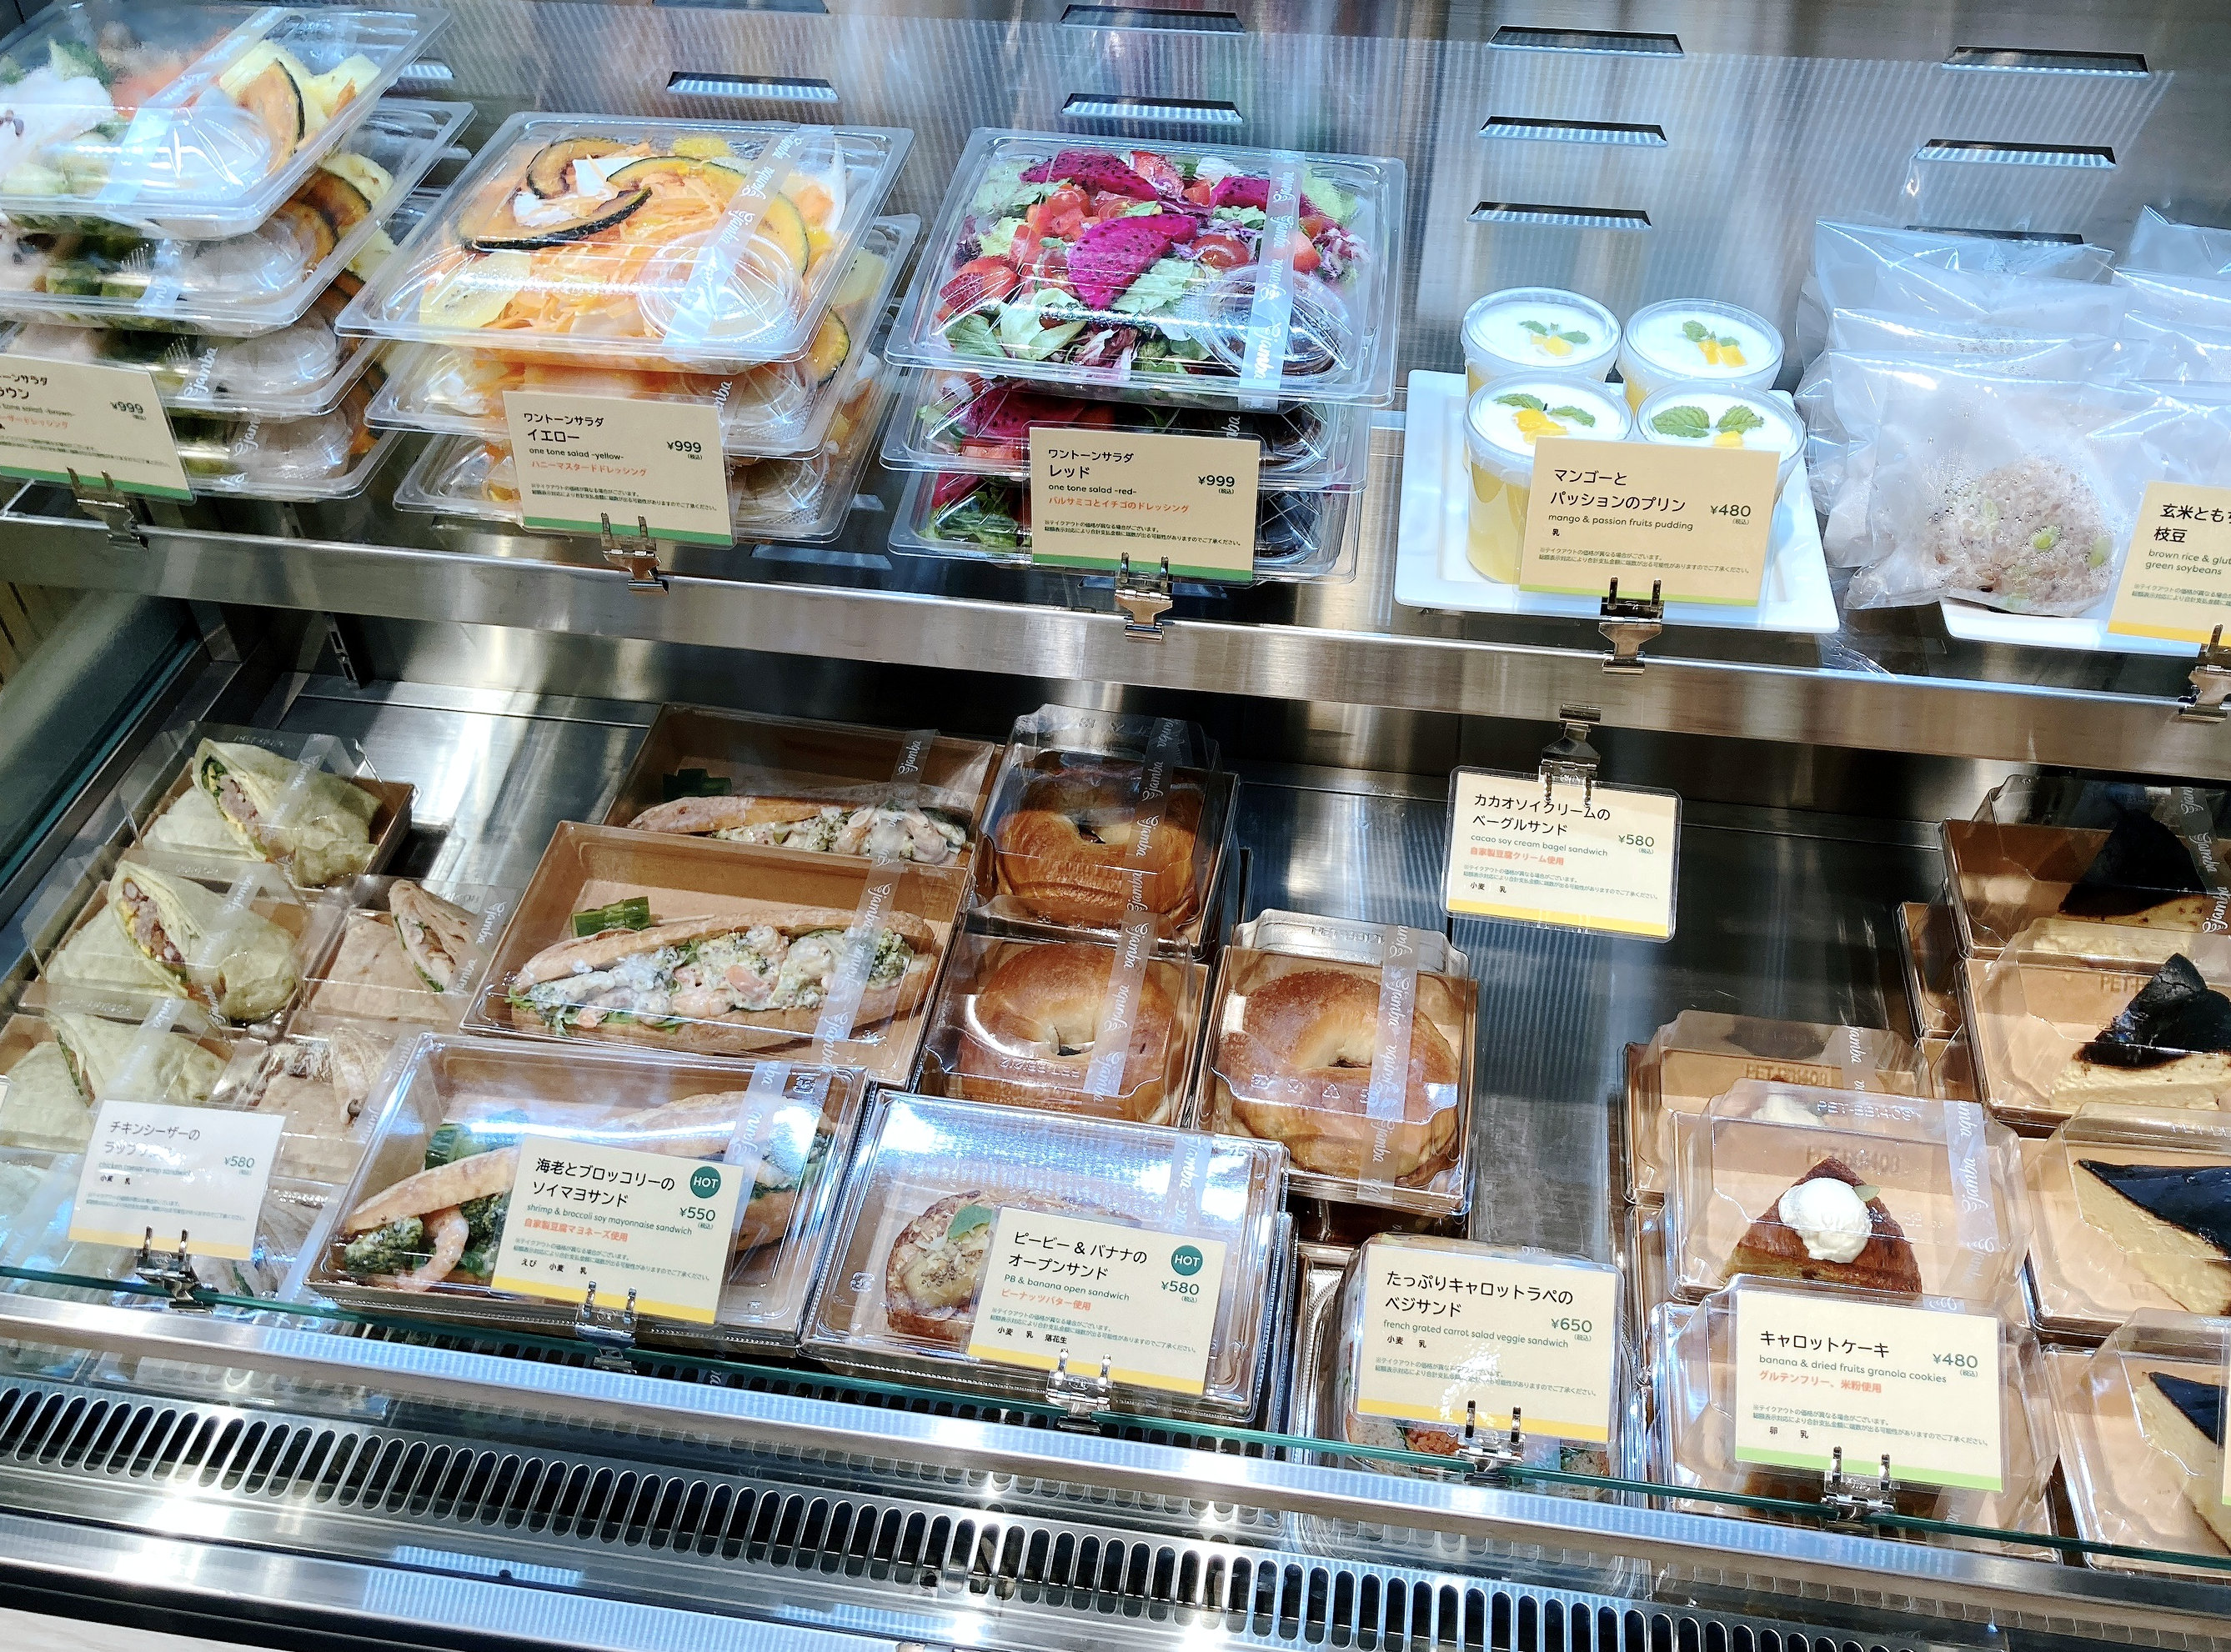 スムージー専門店 ジャンバ が東京駅グランスタに世界初のデリカフェをオープン グルテンフリーのチーズケーキの美味さに驚いた ロケットニュース24